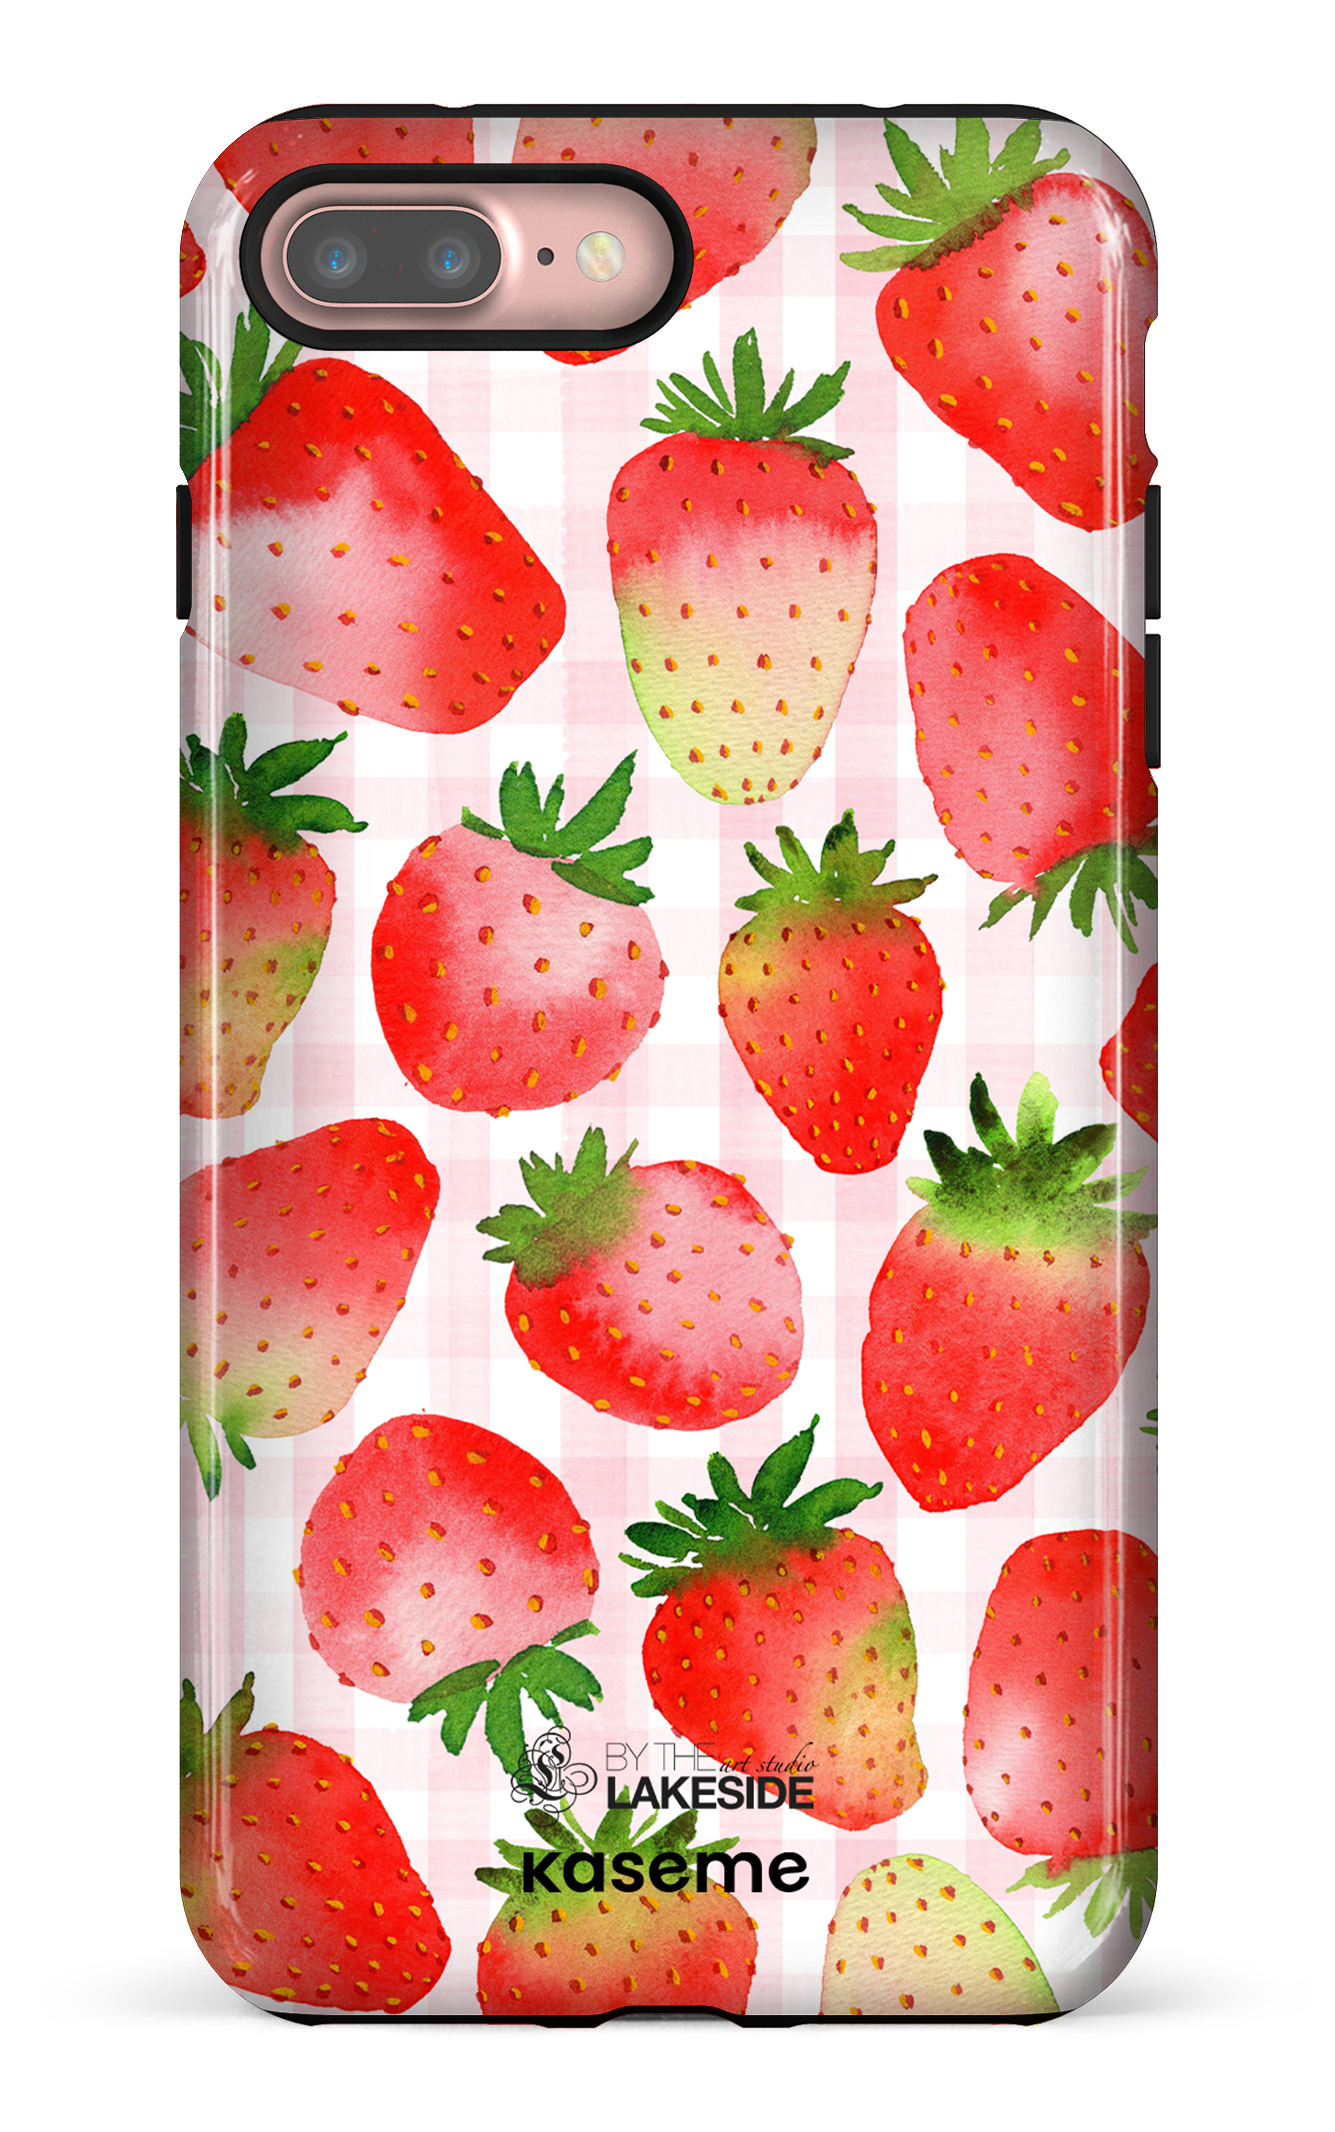 Strawberry Fields by Pooja Umrani - iPhone 7 Plus